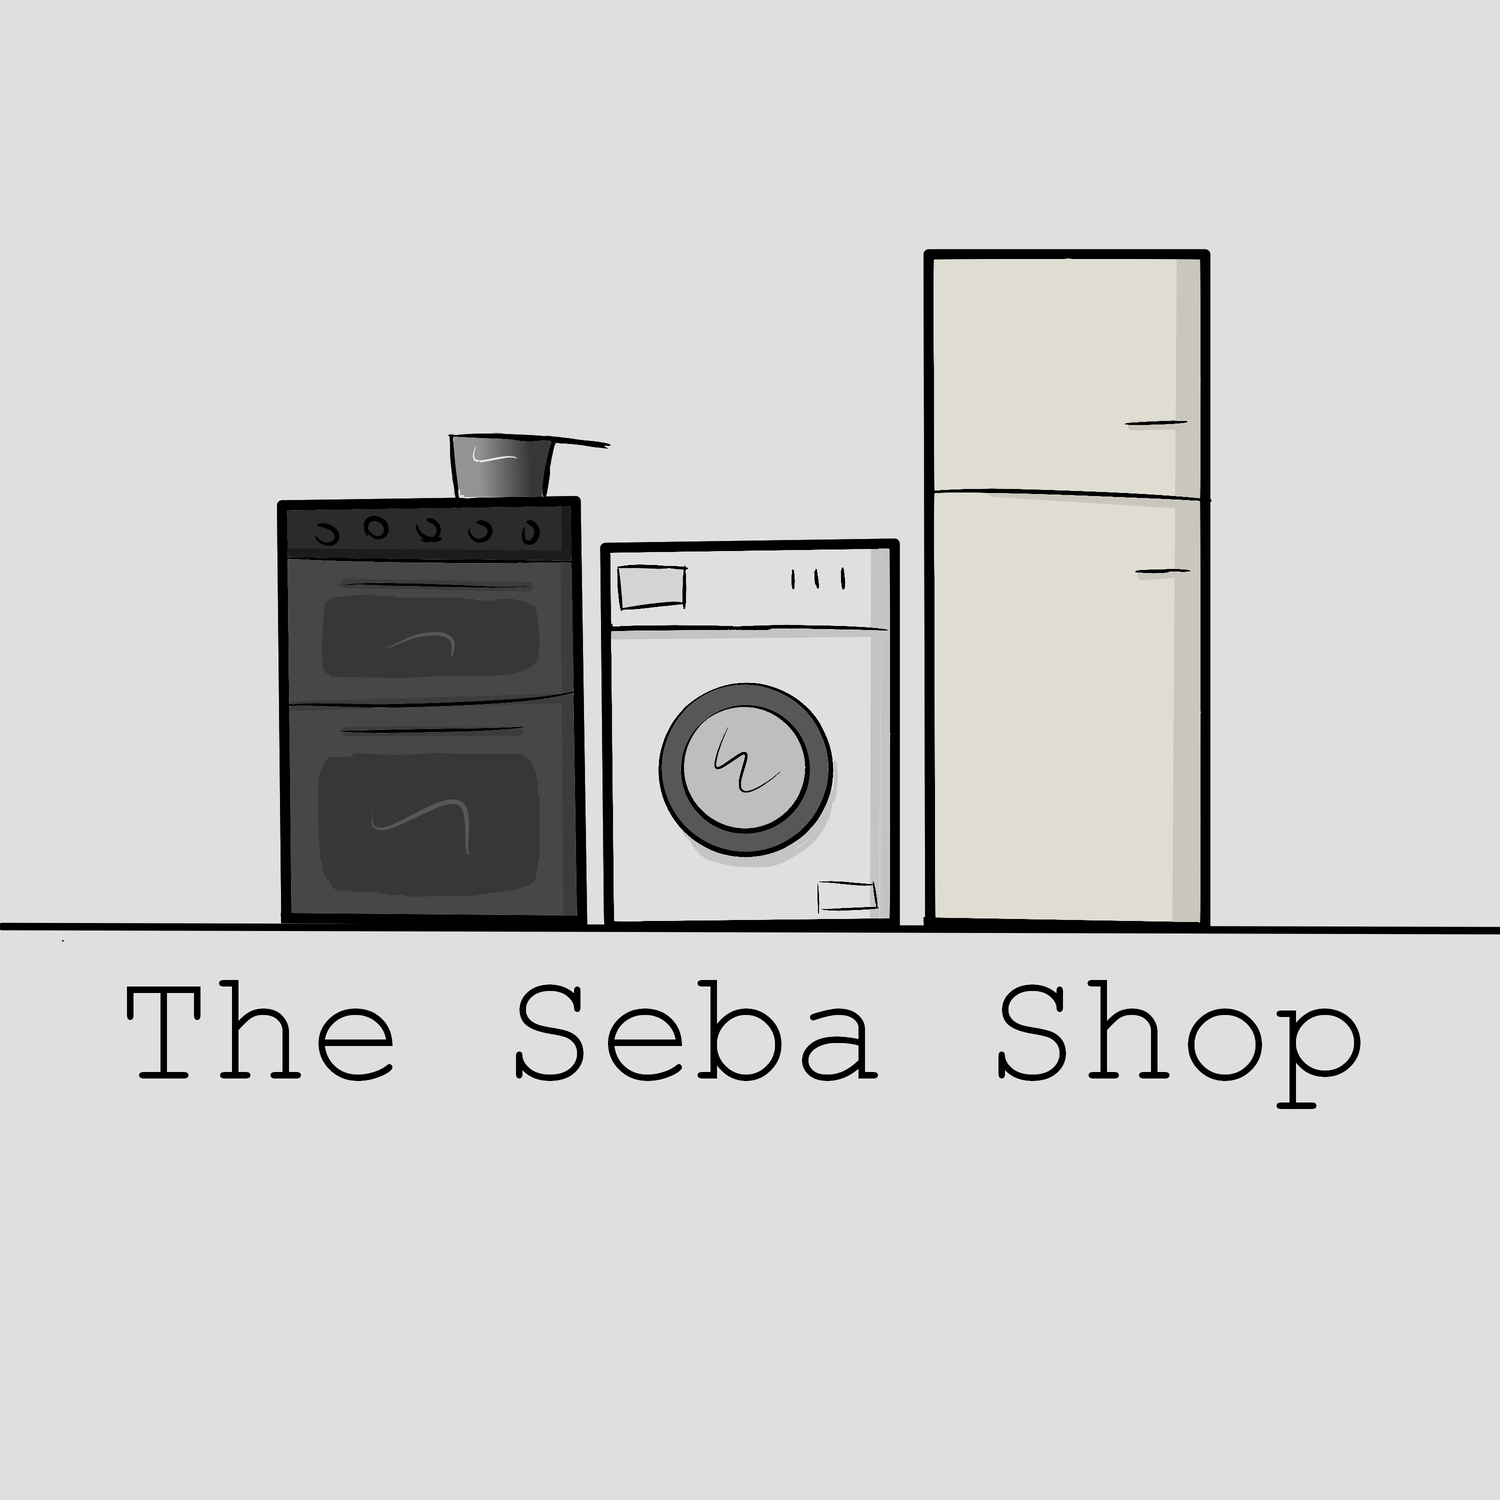 The Seba Shop